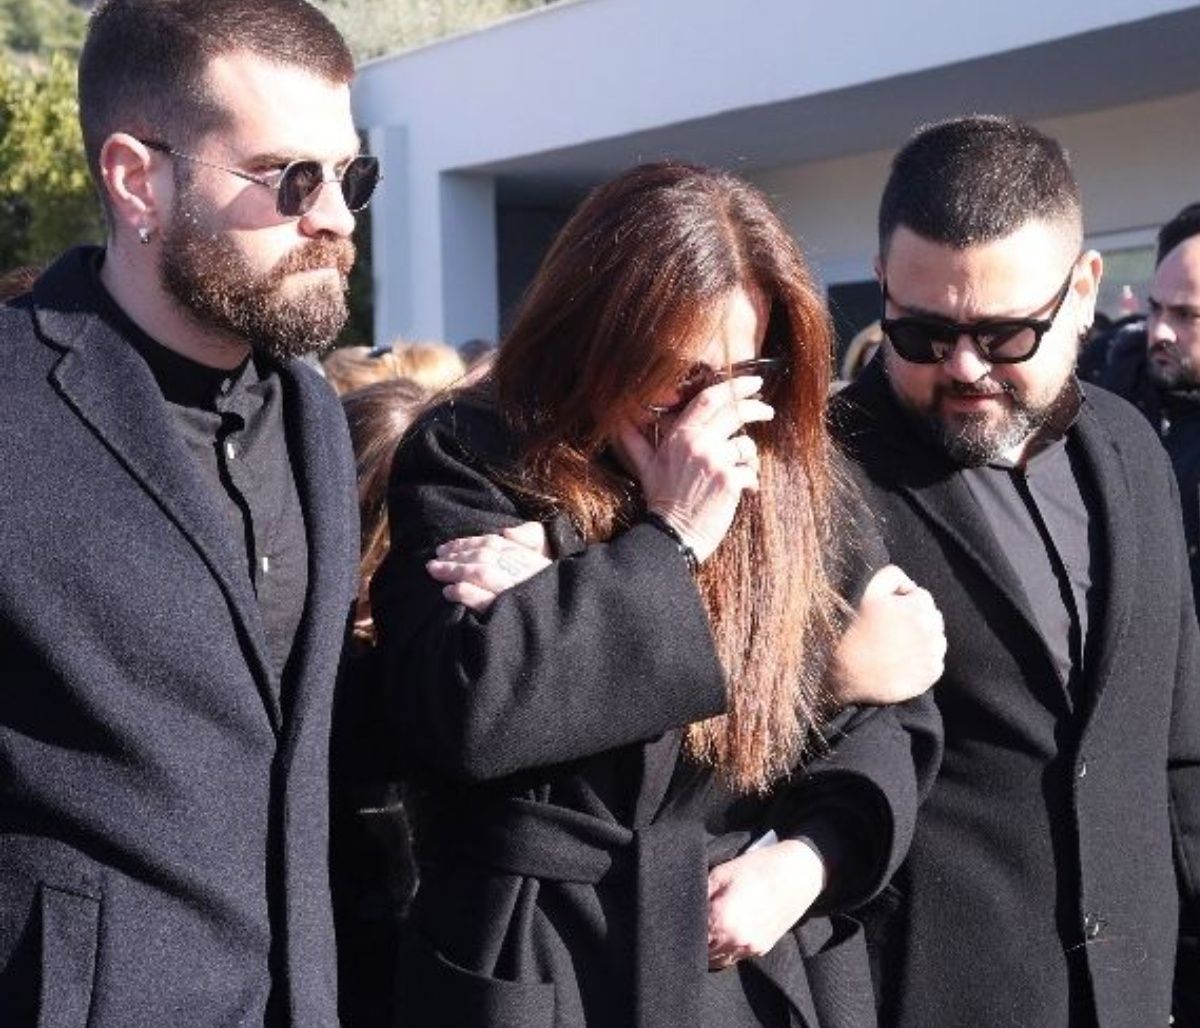 χάρης κωστόπουλος: υποβασταζόμενη η σύζυγός του στην κηδεία